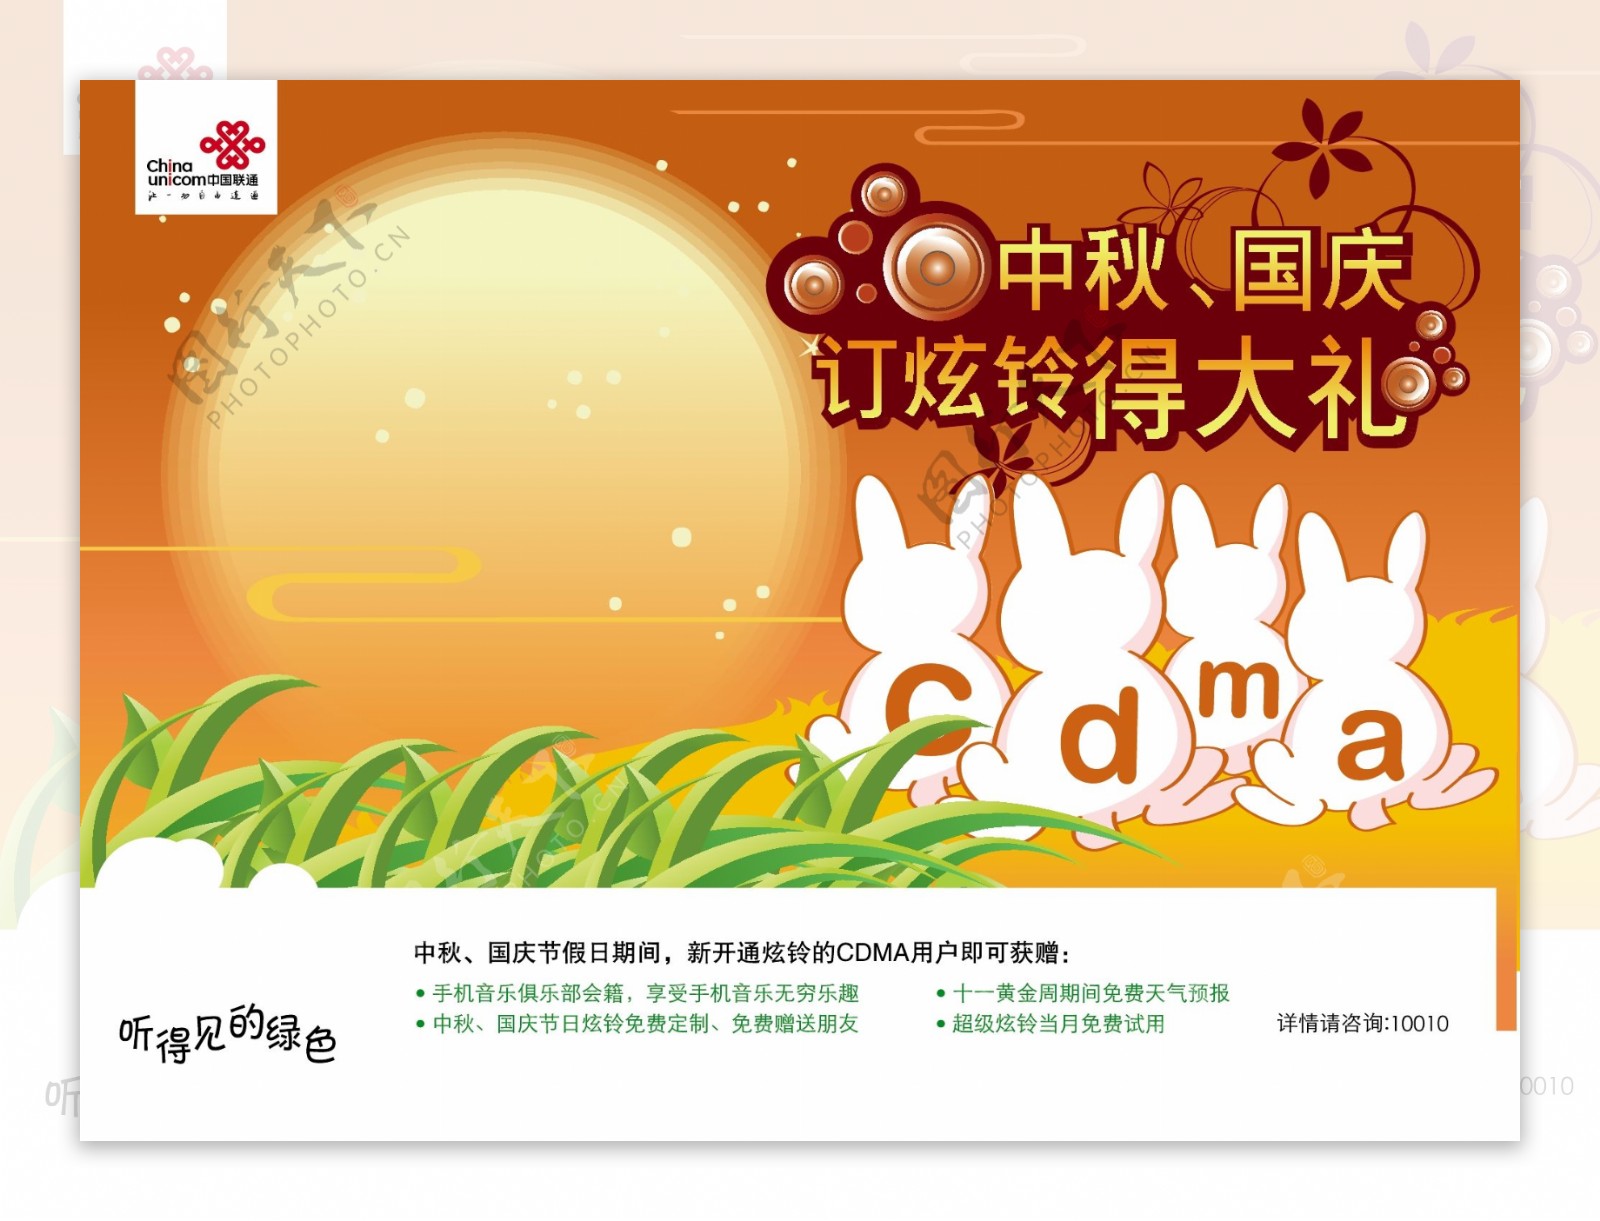 中国联通通讯宣传海报矢量模板AI源文件0015